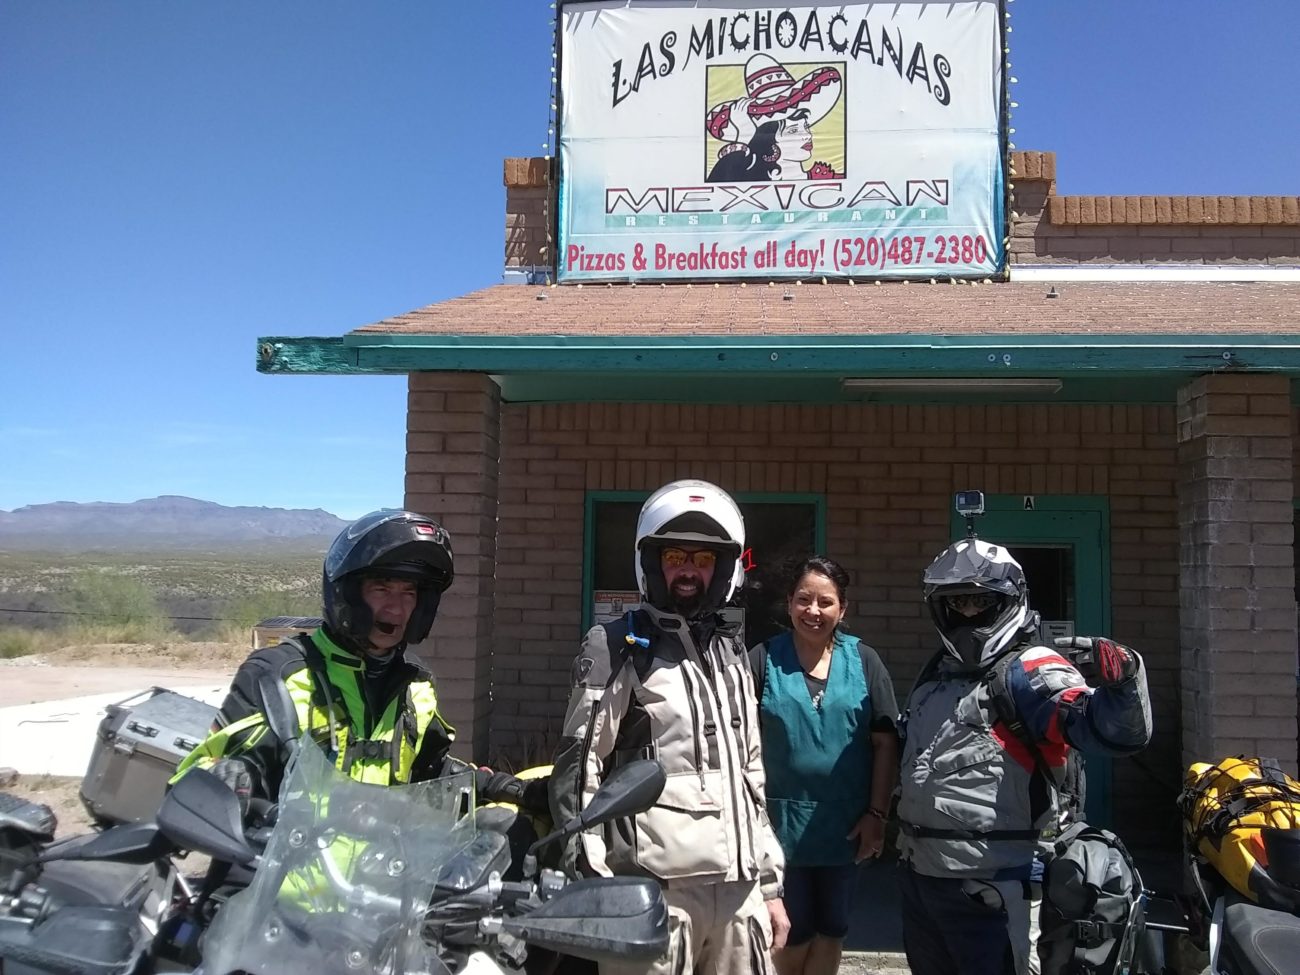 Las Michoacanas Mexican Restaurant